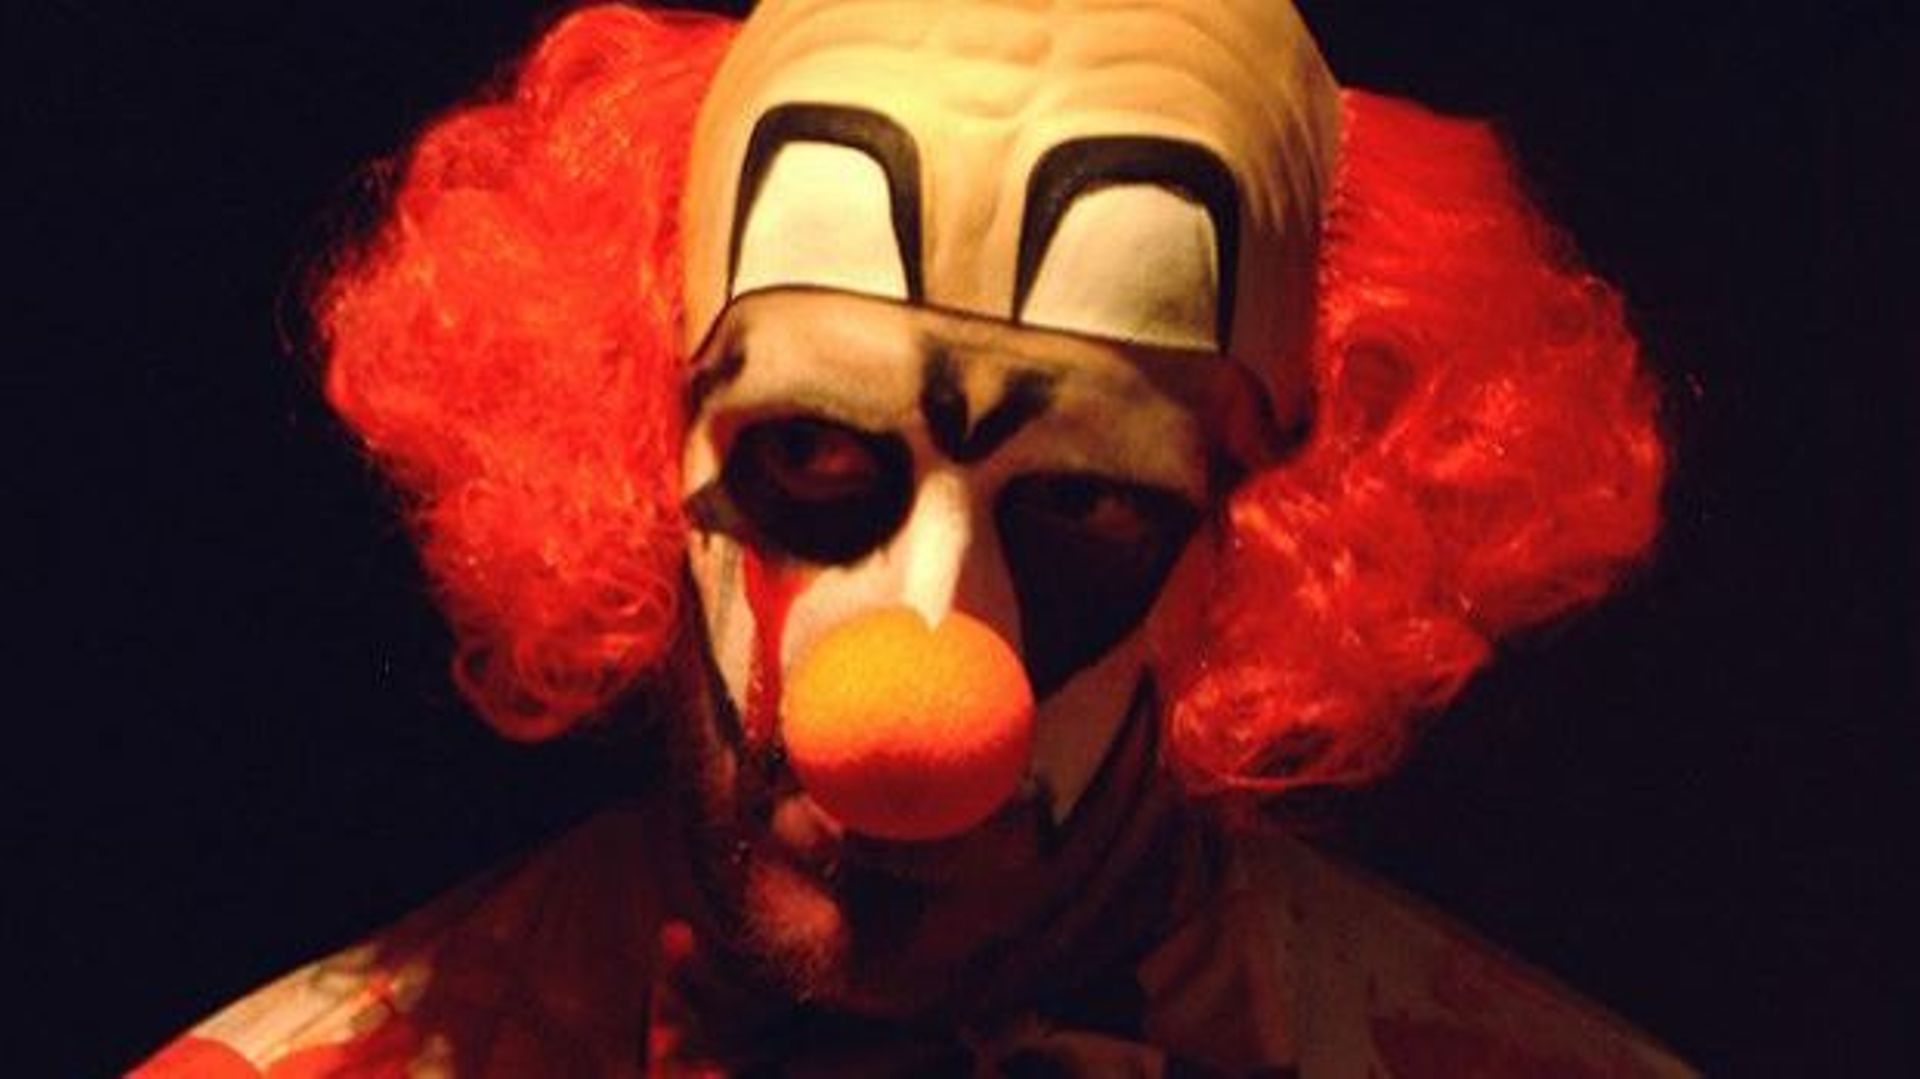 La rumeur enfle : les faux clowns débarqueraient chez nous… (illustration)